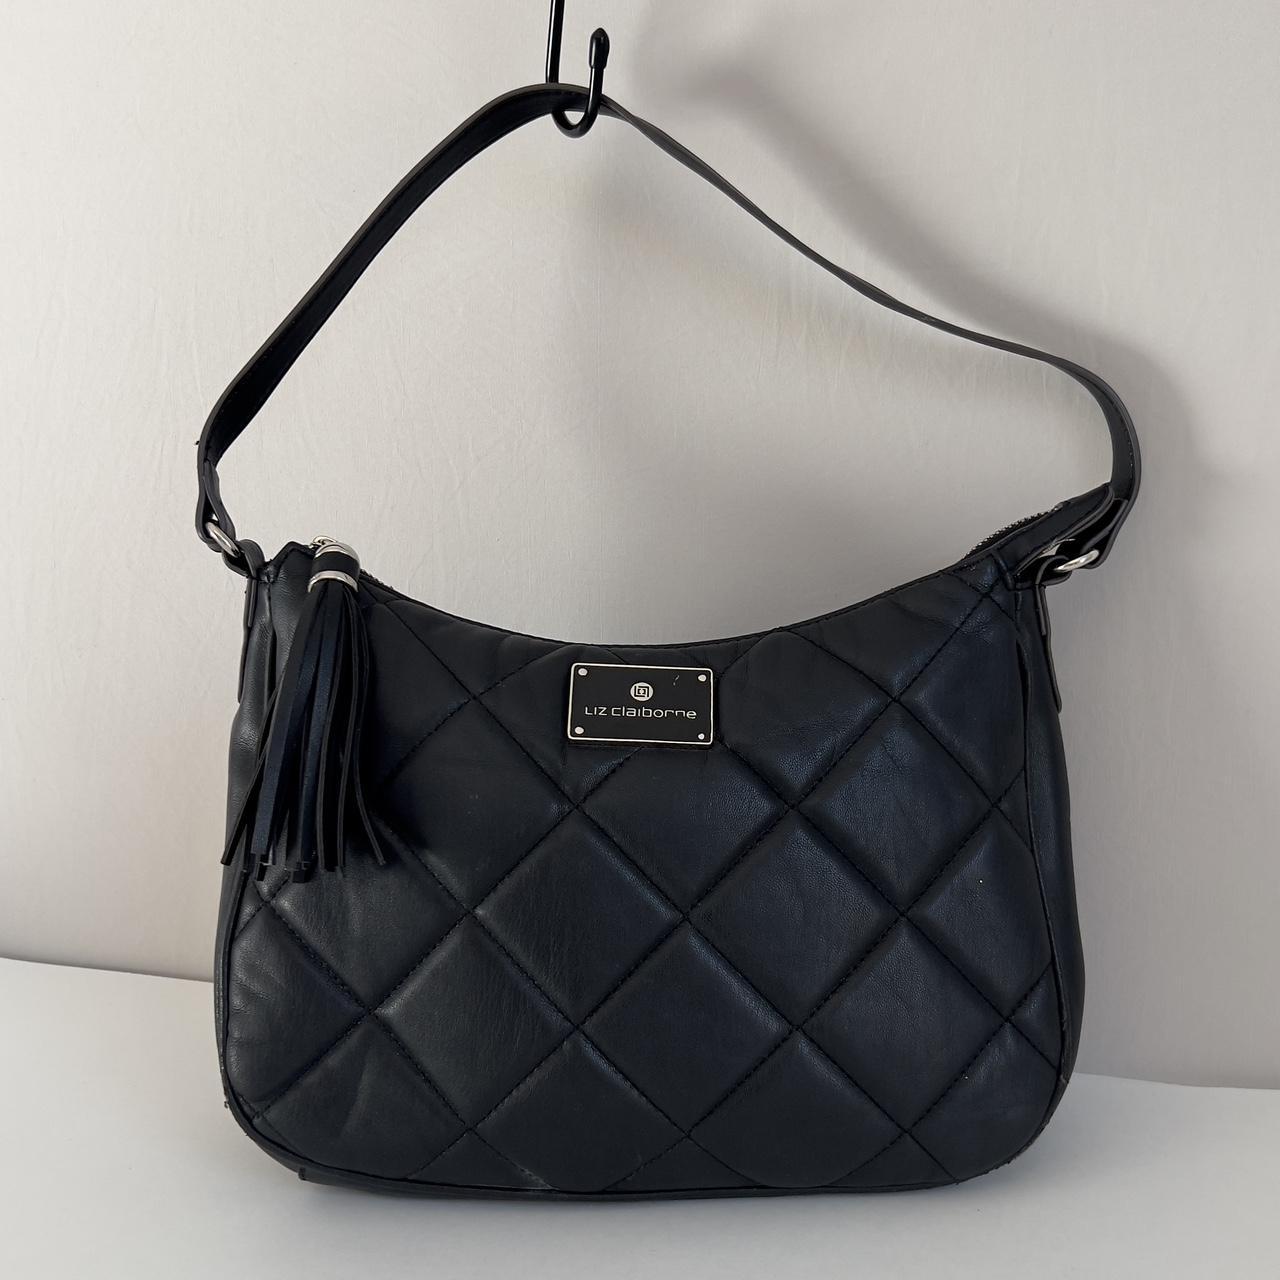 Liz Claiborne Black Vegan Leather Hobo Shoulder Bag | eBay